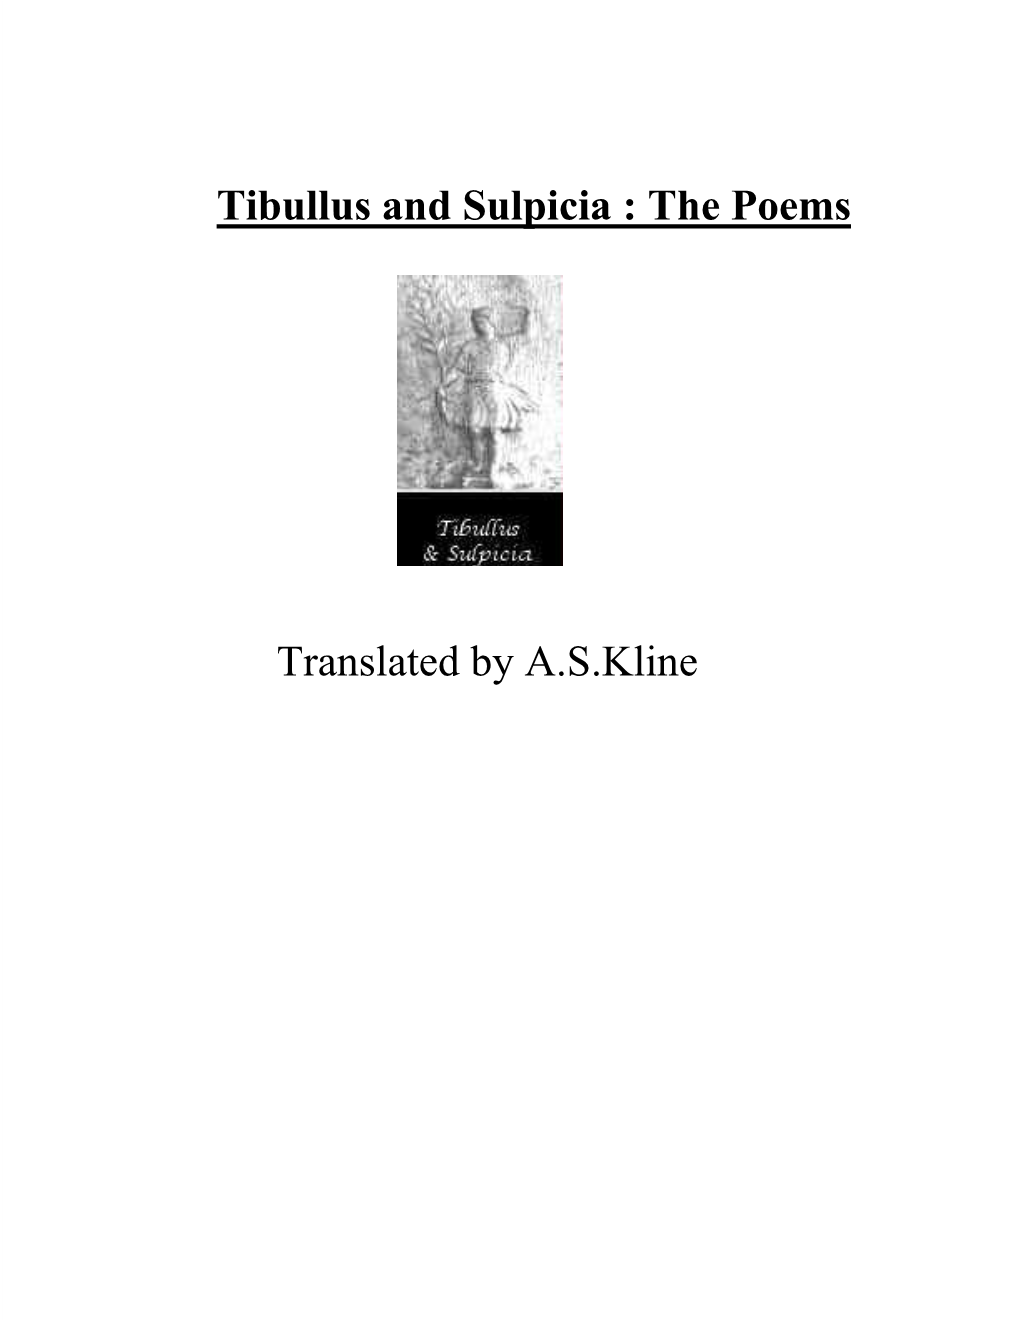 Tibullus and Sulpicia: the Poems